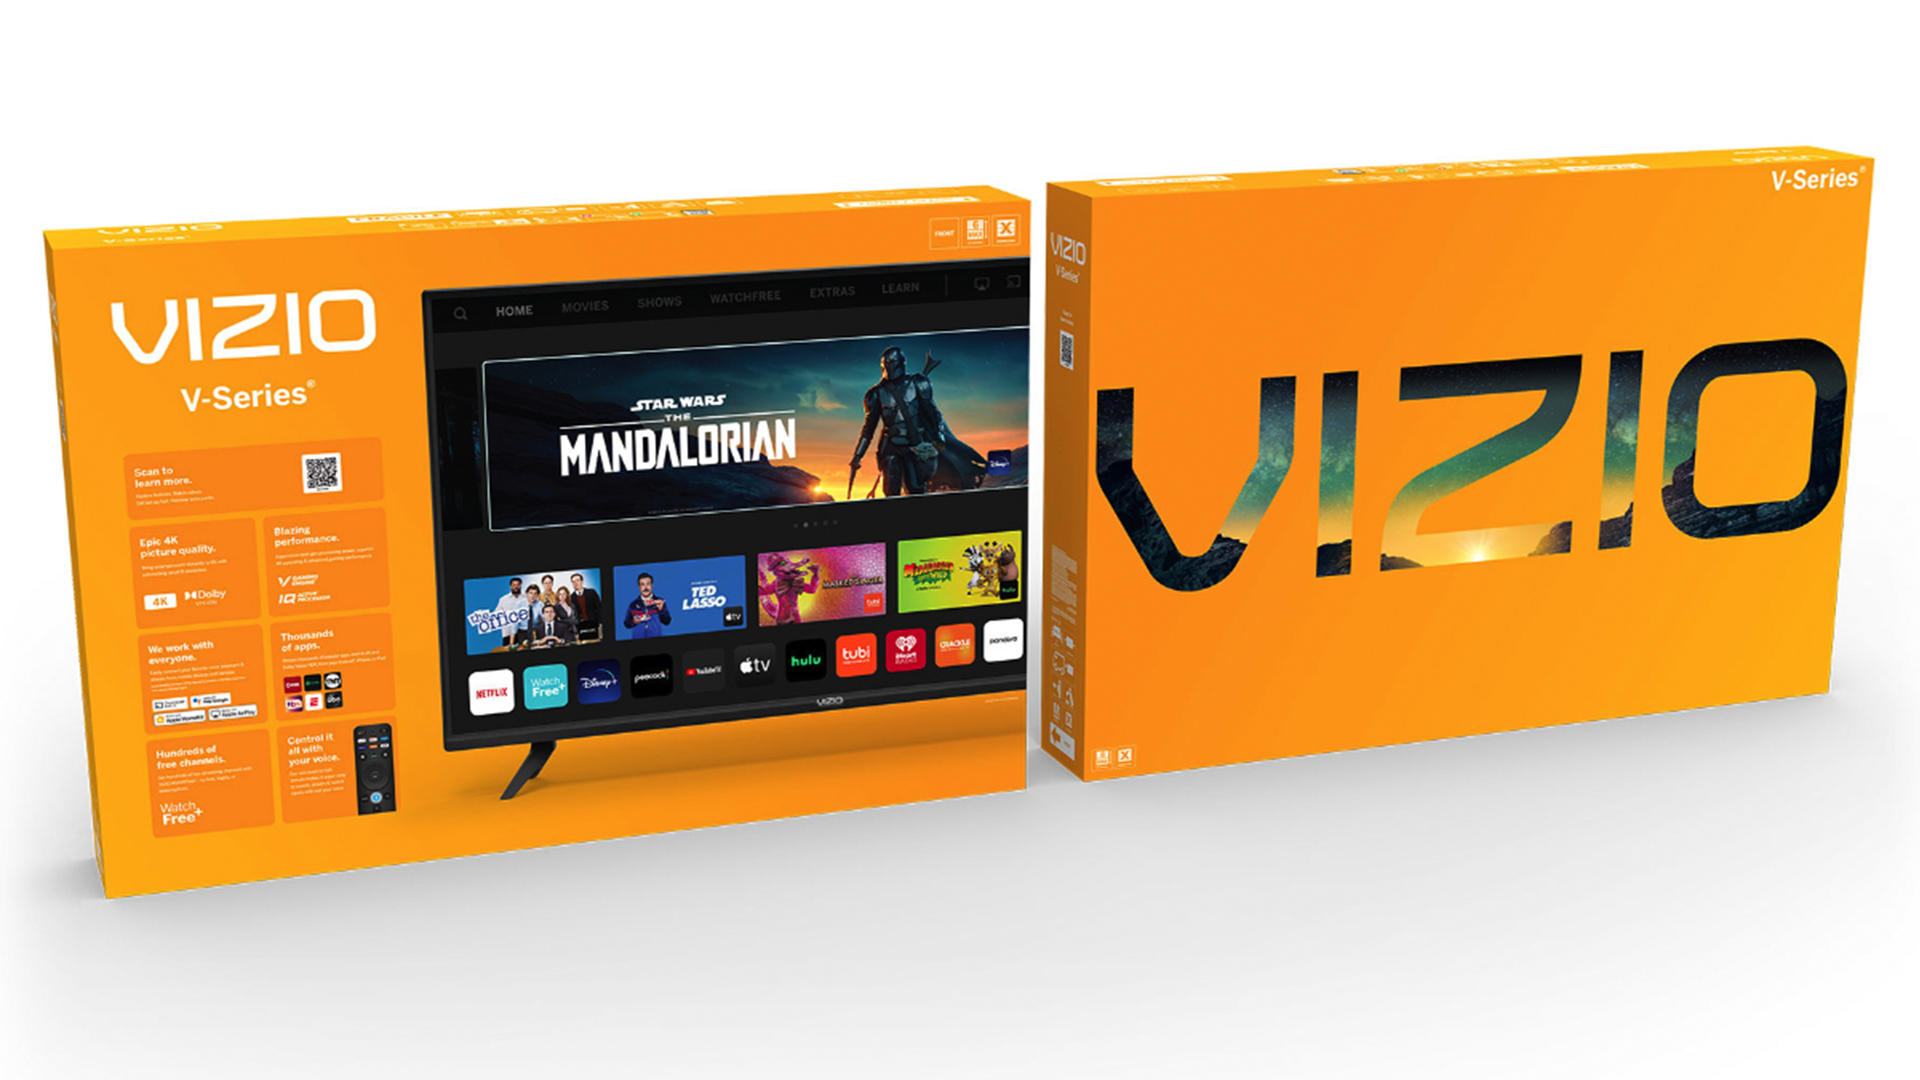 A VIZIO smart TV's box.